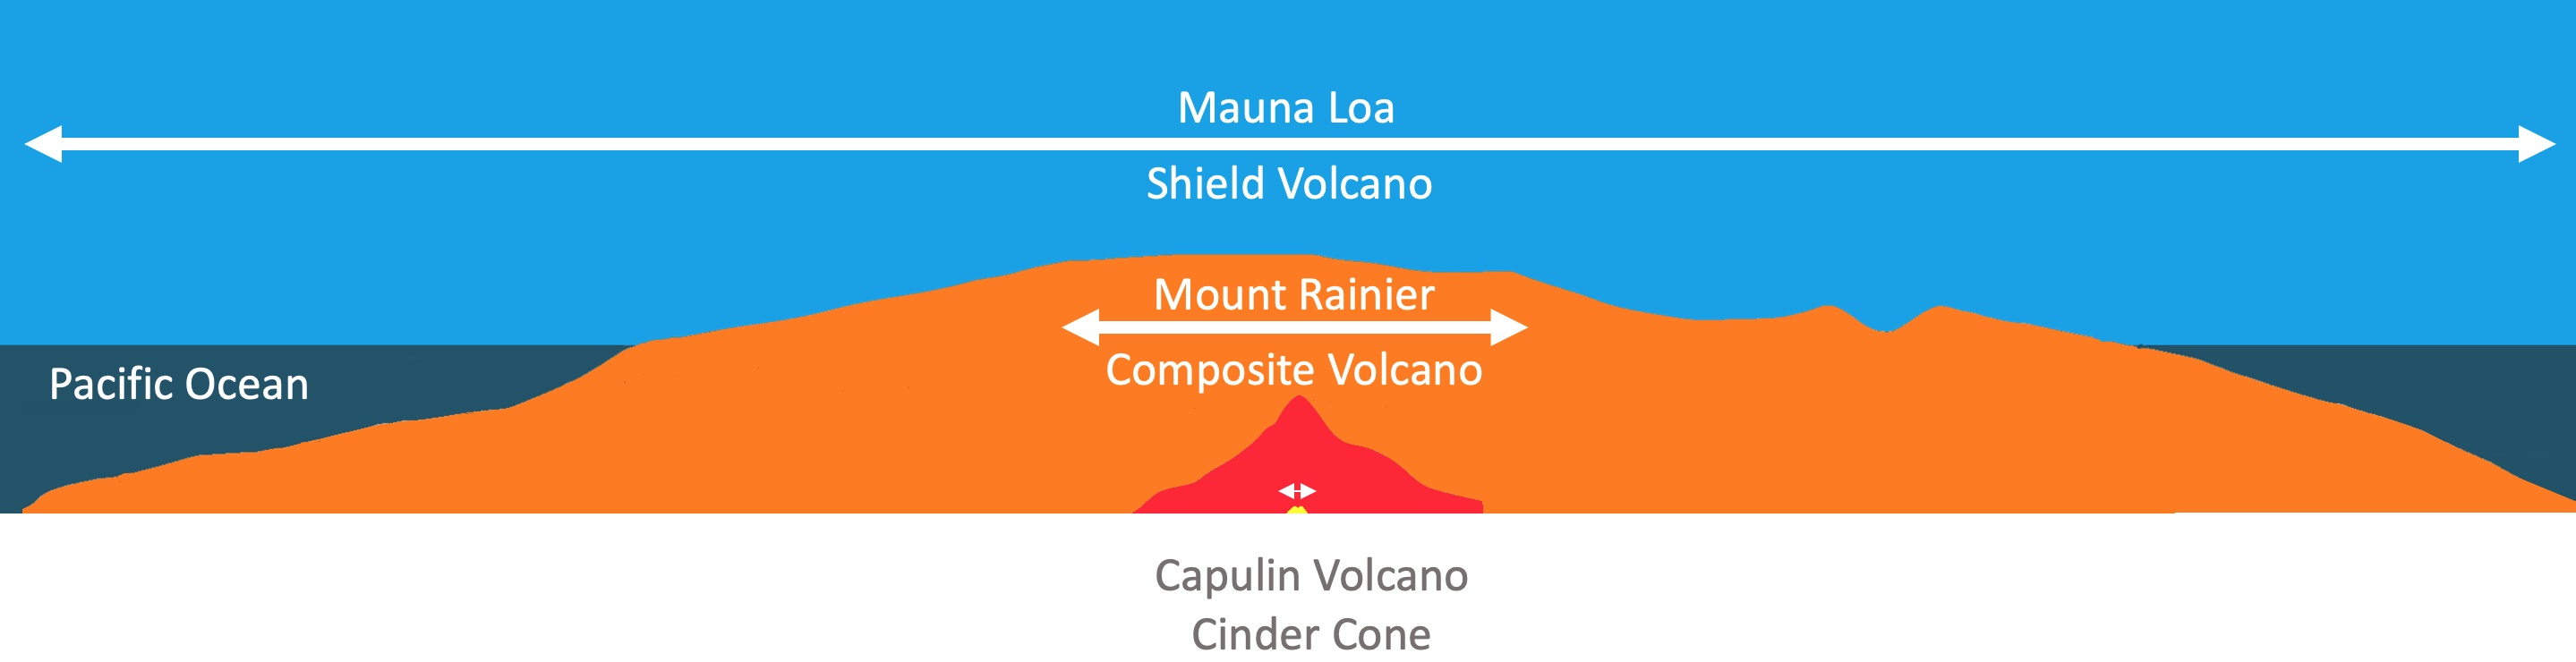 Different Volcano type sizes